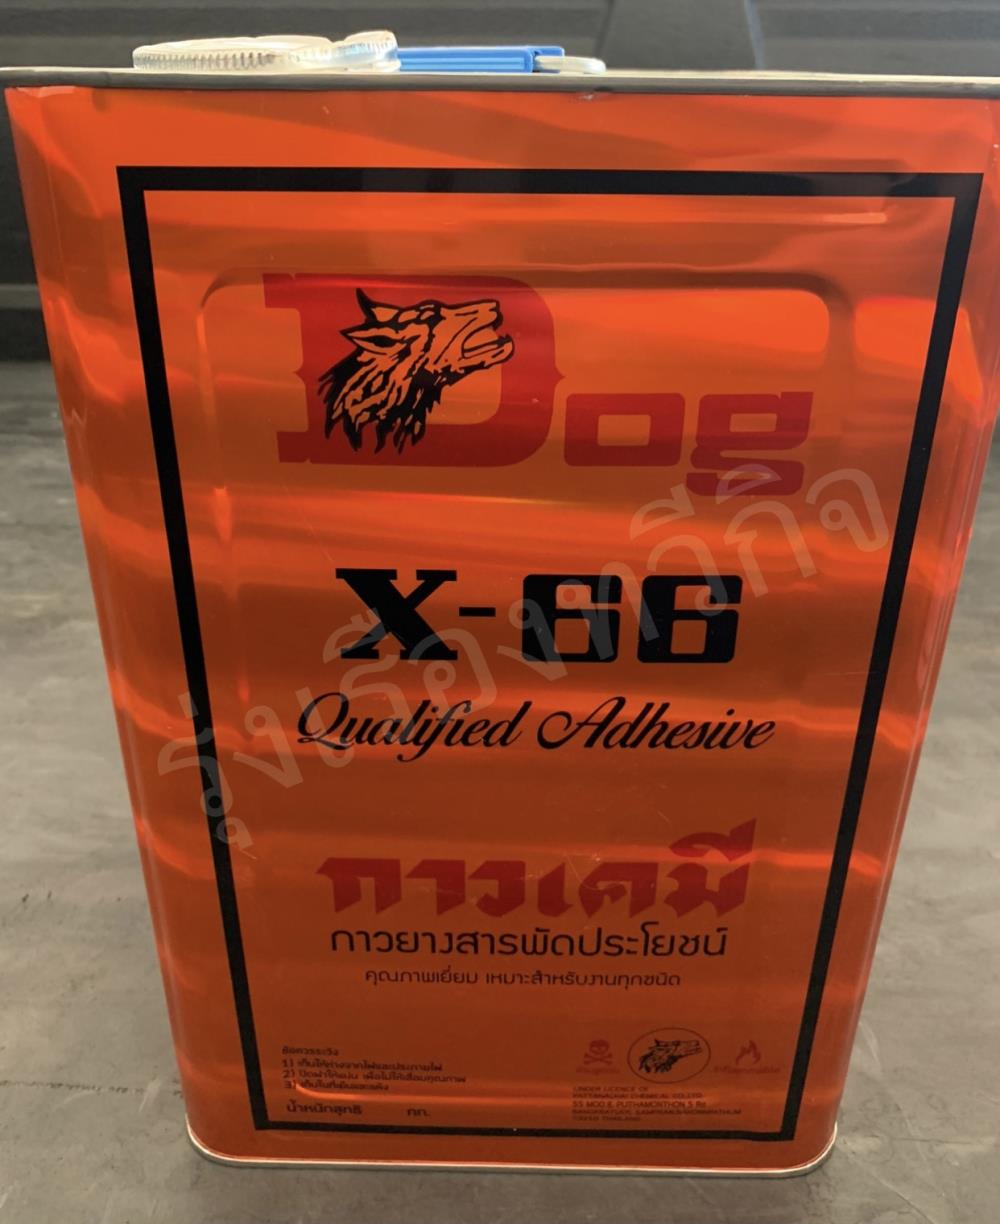 กาวยาง ตรา DOG X-66 (12 KG.),กาวยาง ตรา DOG X-66 (12 KG.),DOG,Hardware and Consumable/General Hardware